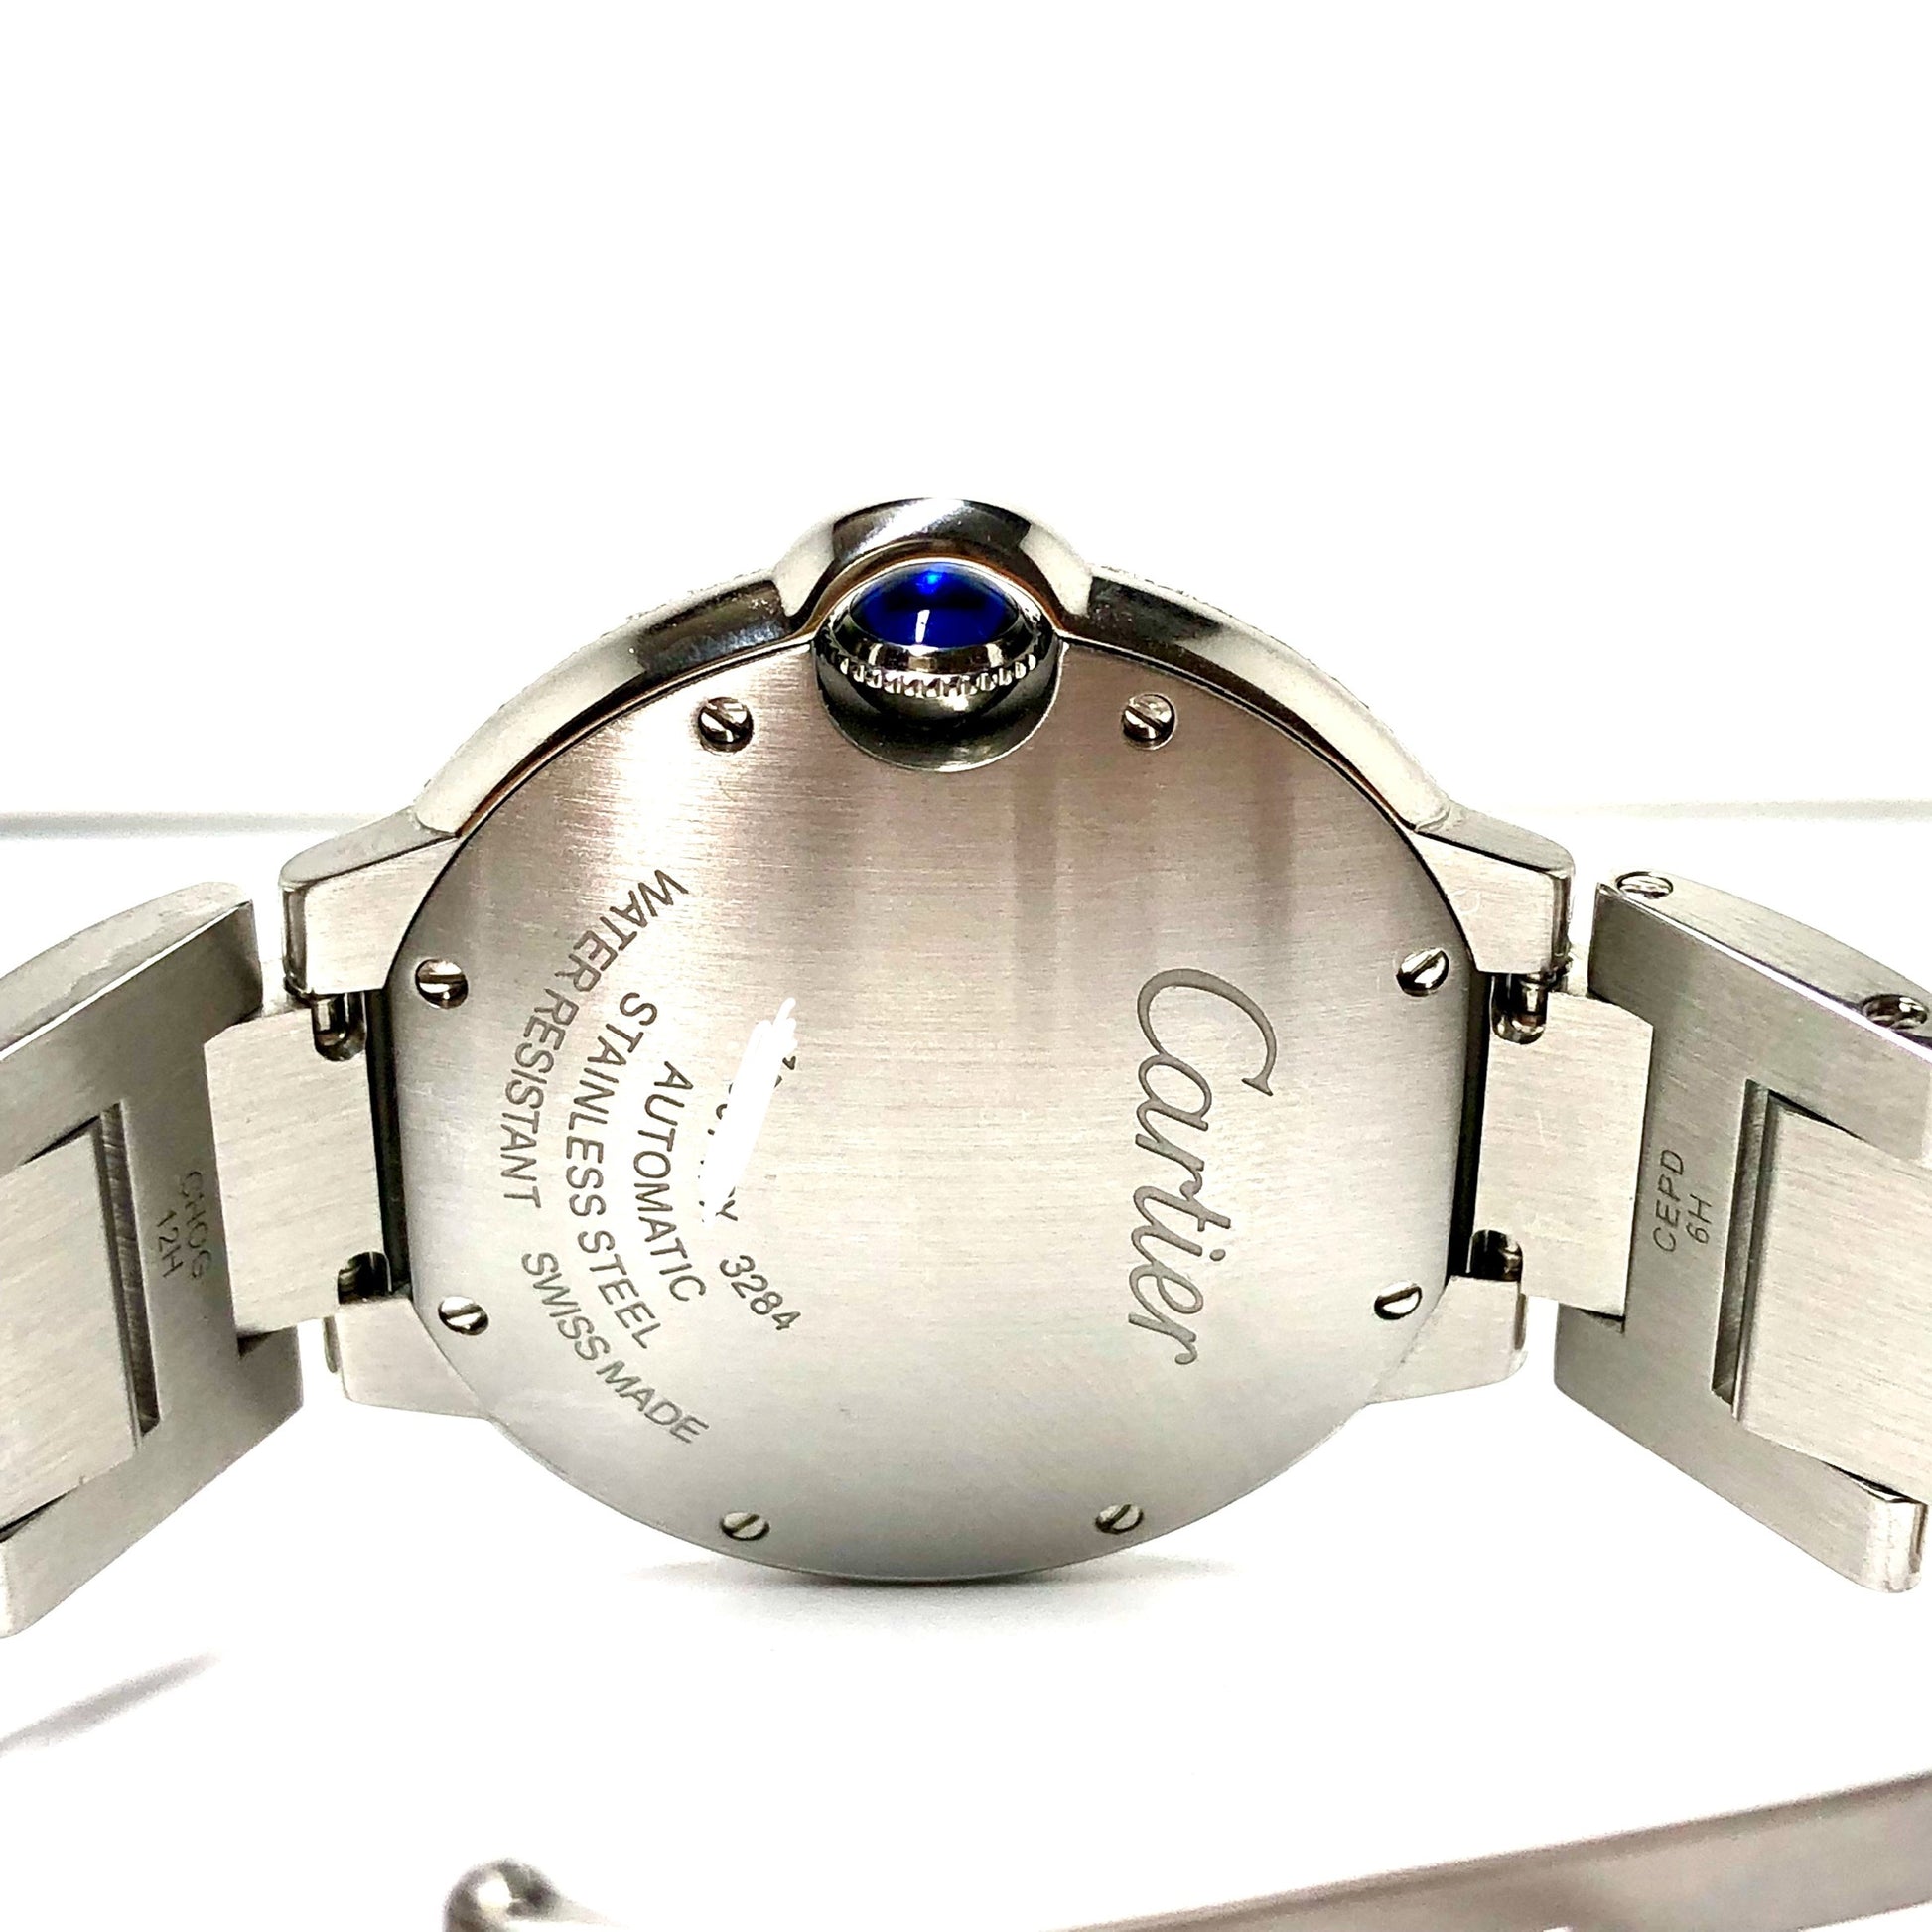 CARTIER BALLON BLEU 3284 Automatic Steel 36mm 1.87TCW DIAMOND Watch